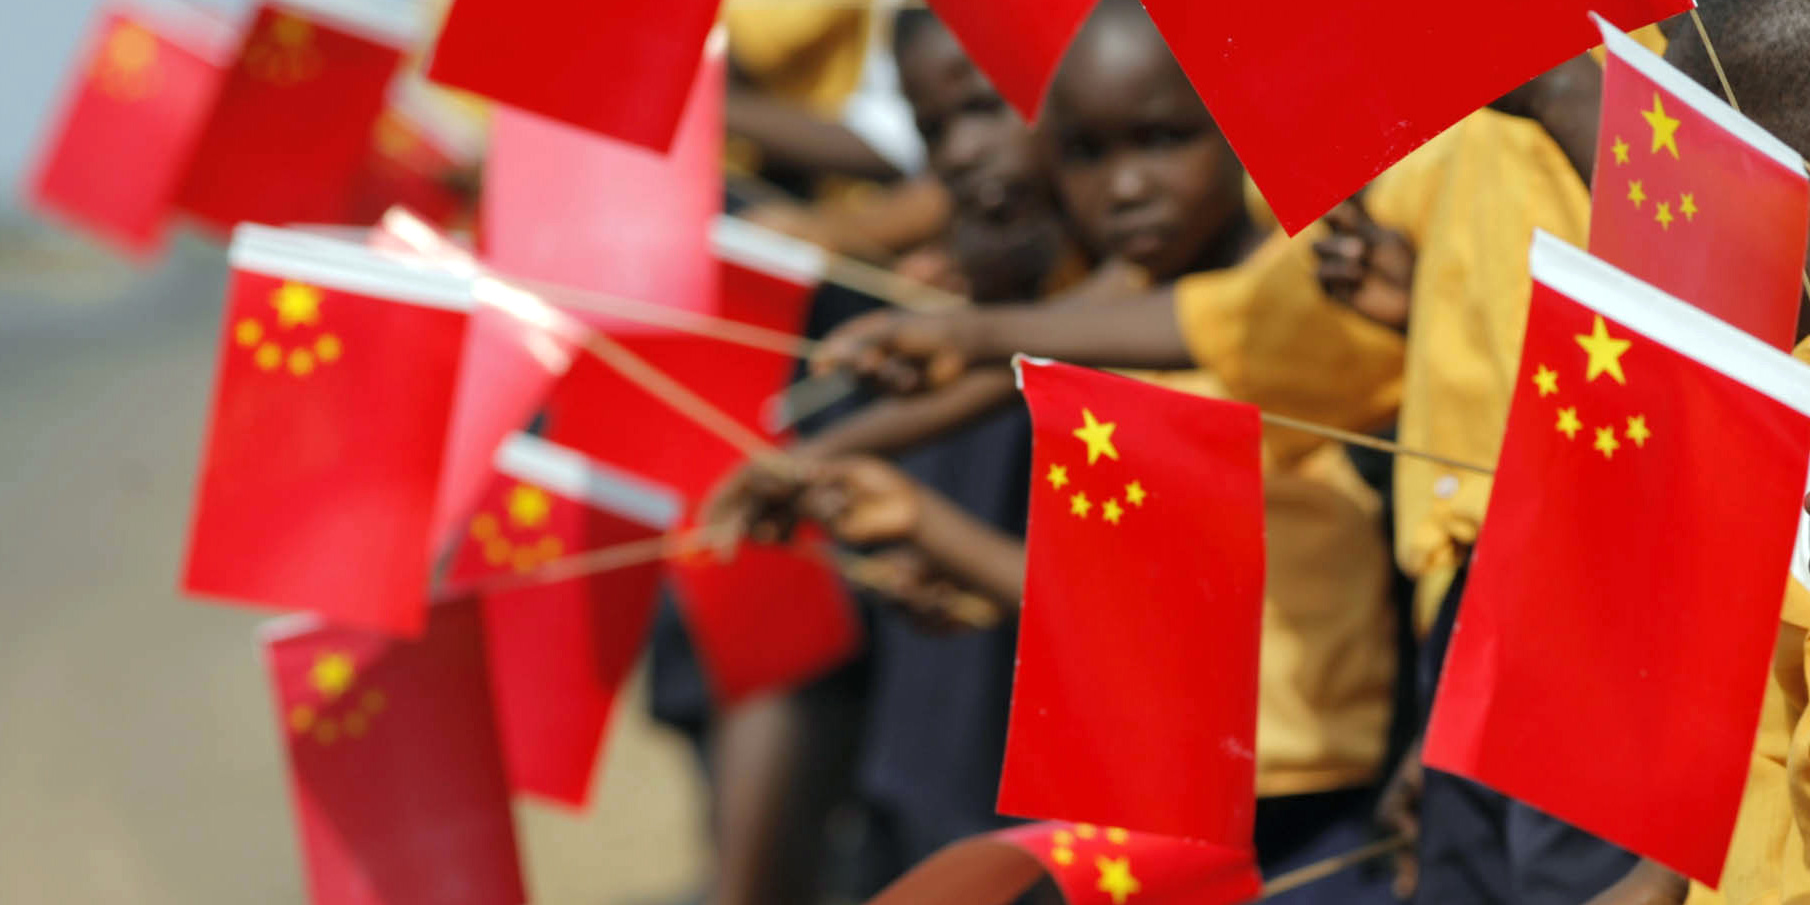 الصين تتعهد بدعم إفريقيا لتجاوز أزمة كورونا بدون “فرض إرادتها” على القارة